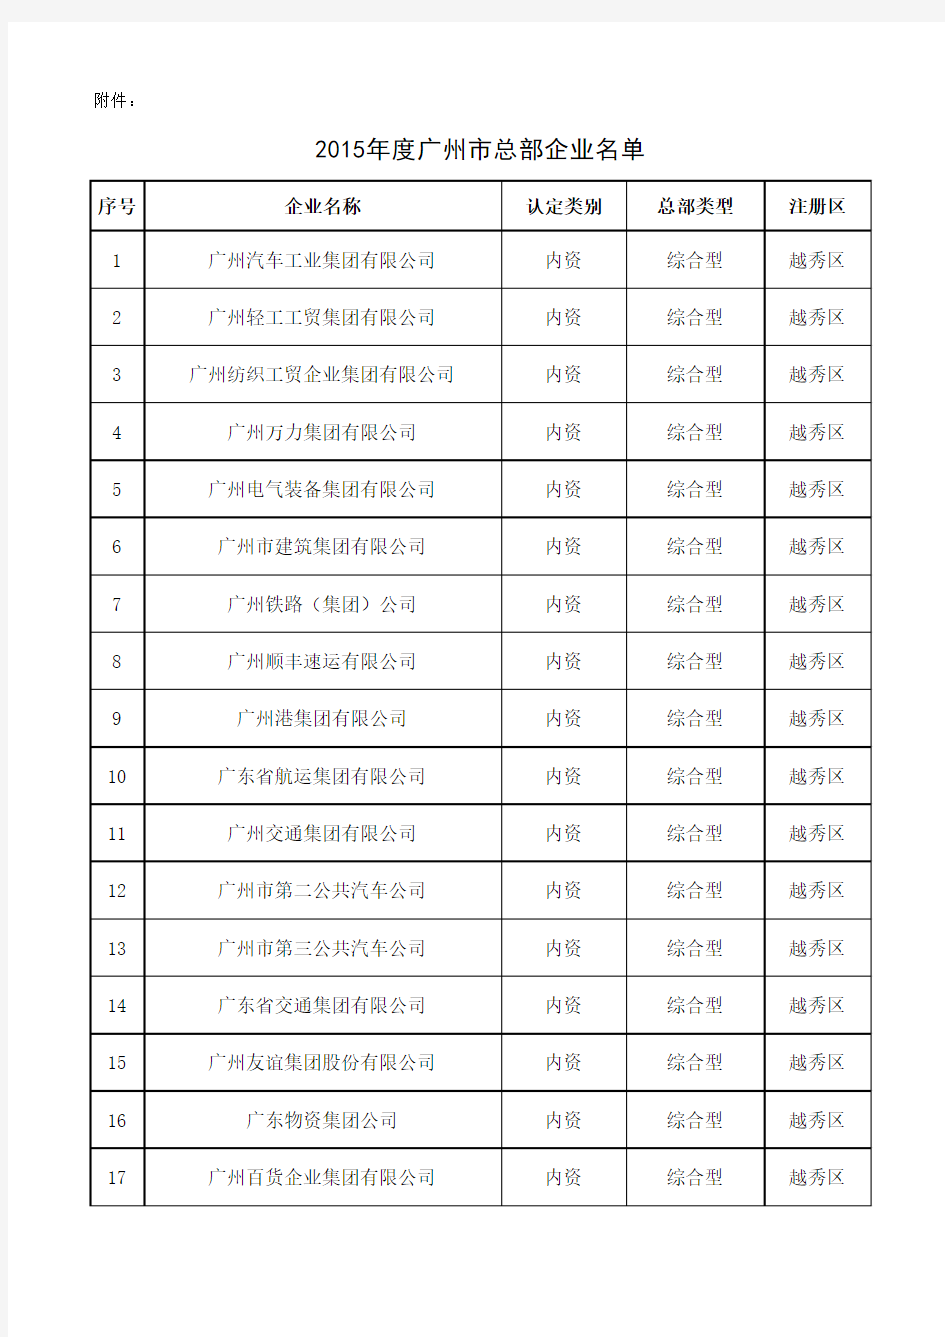 2015年广州总部企业名细